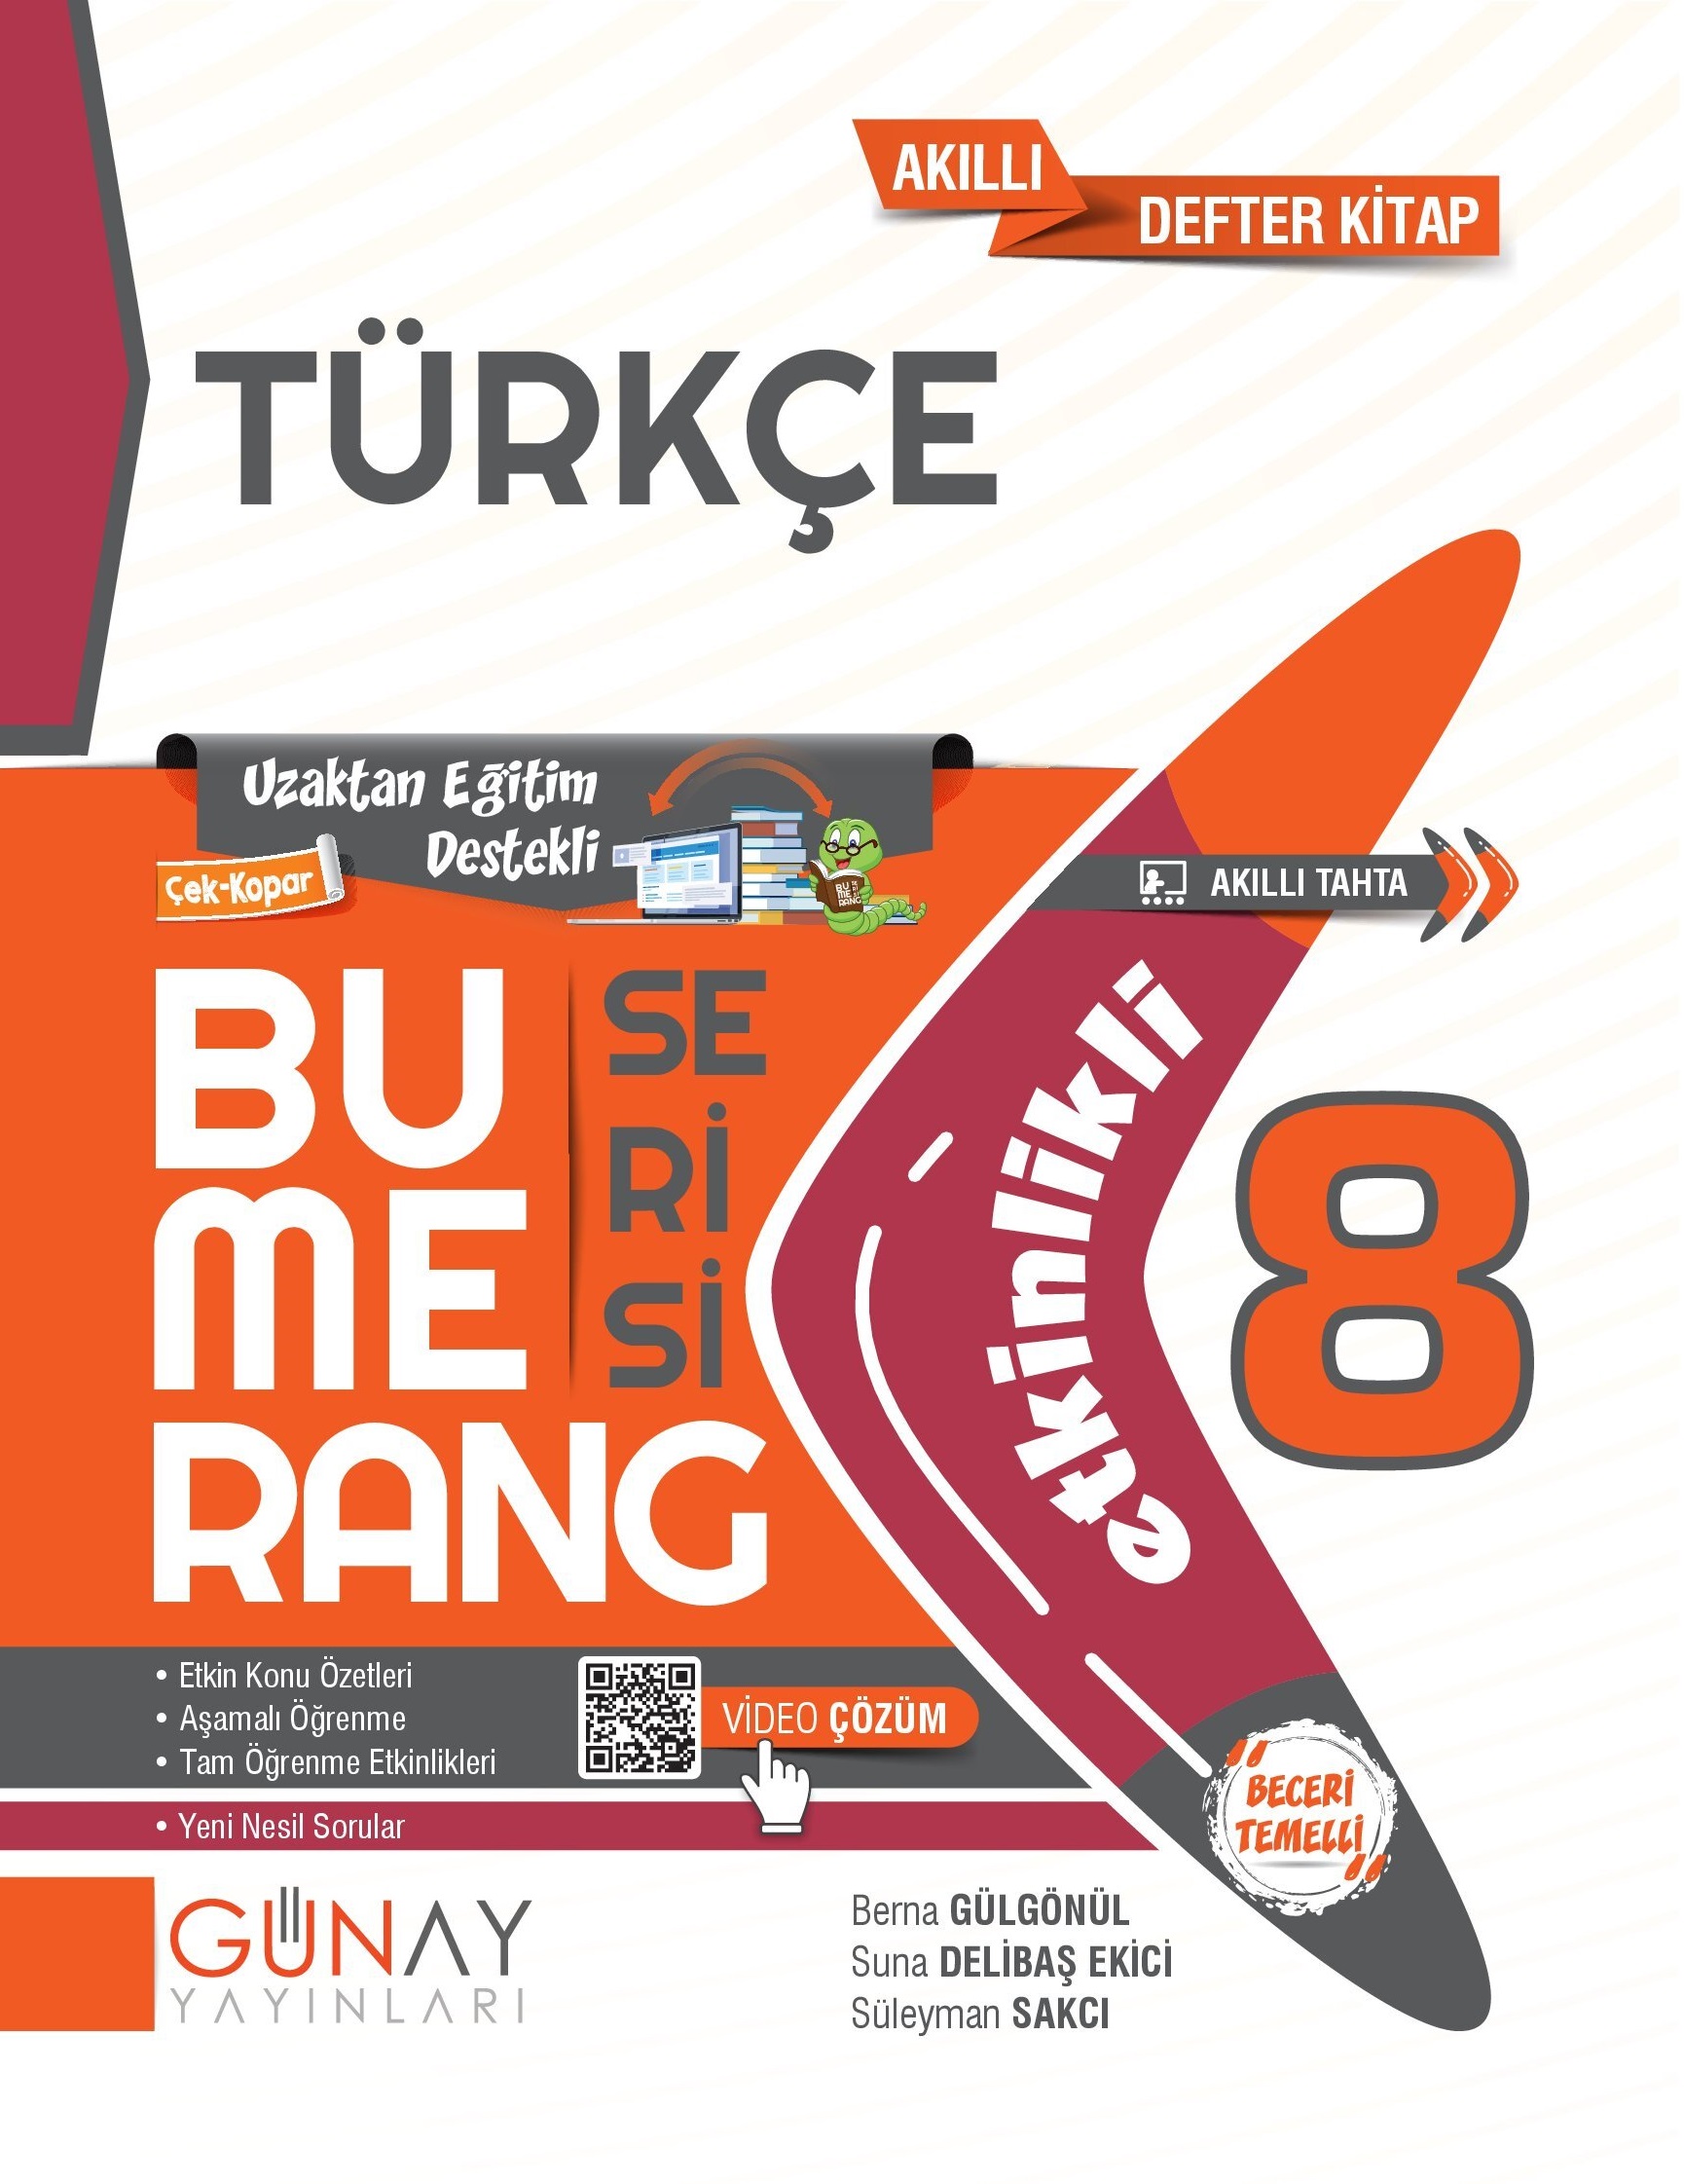 8 Bumerang Turkce